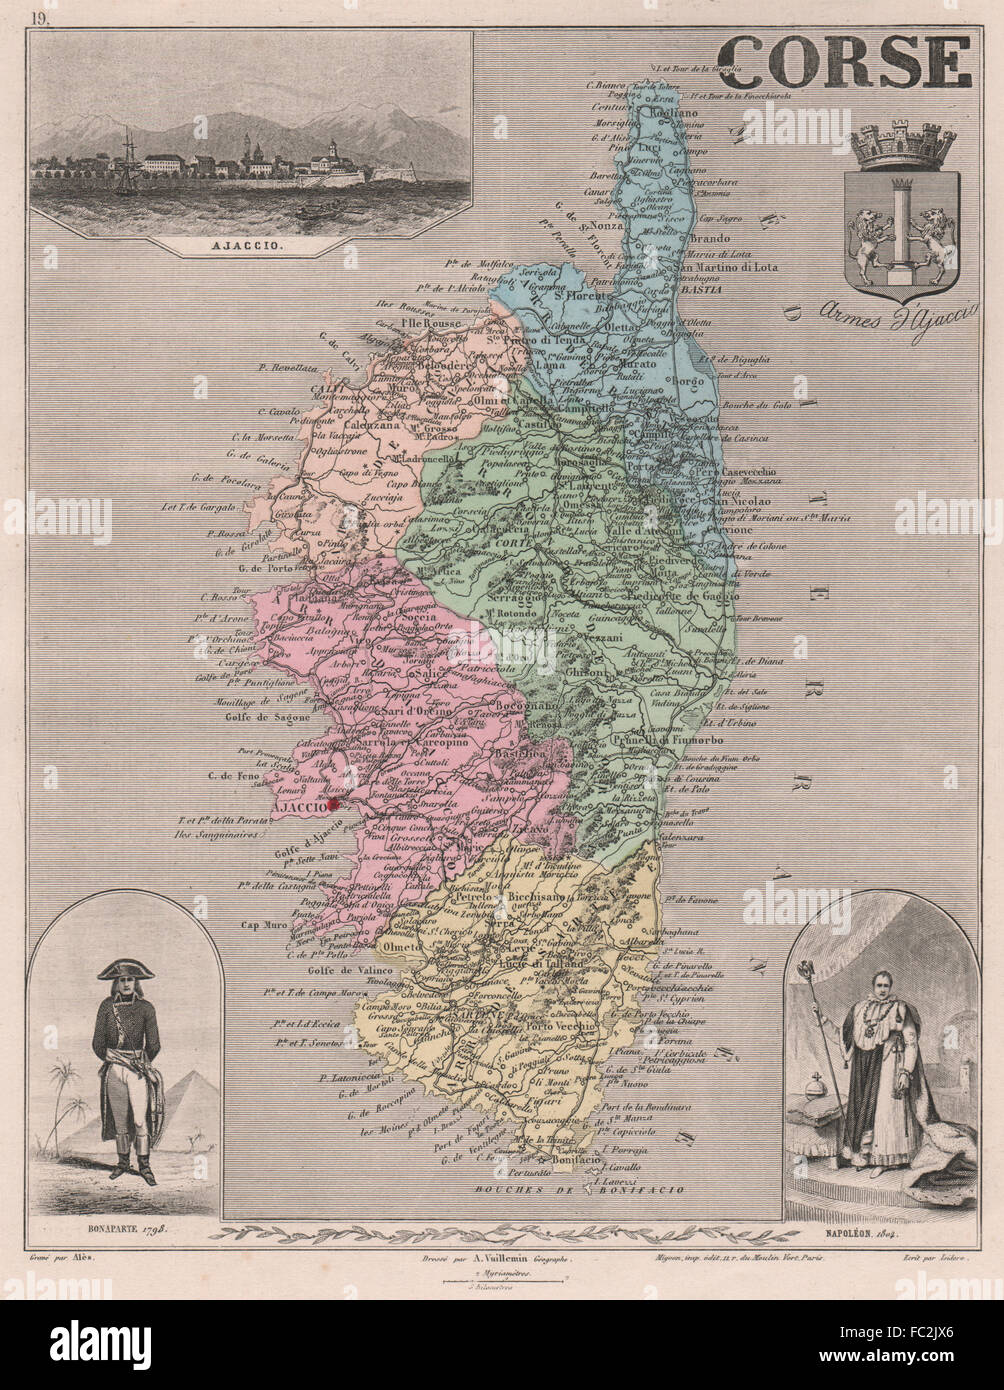 La corse. 'Corse'. Département. Ajaccio. Napoléon Bonaparte. VUILLEMIN, 1879 map Banque D'Images